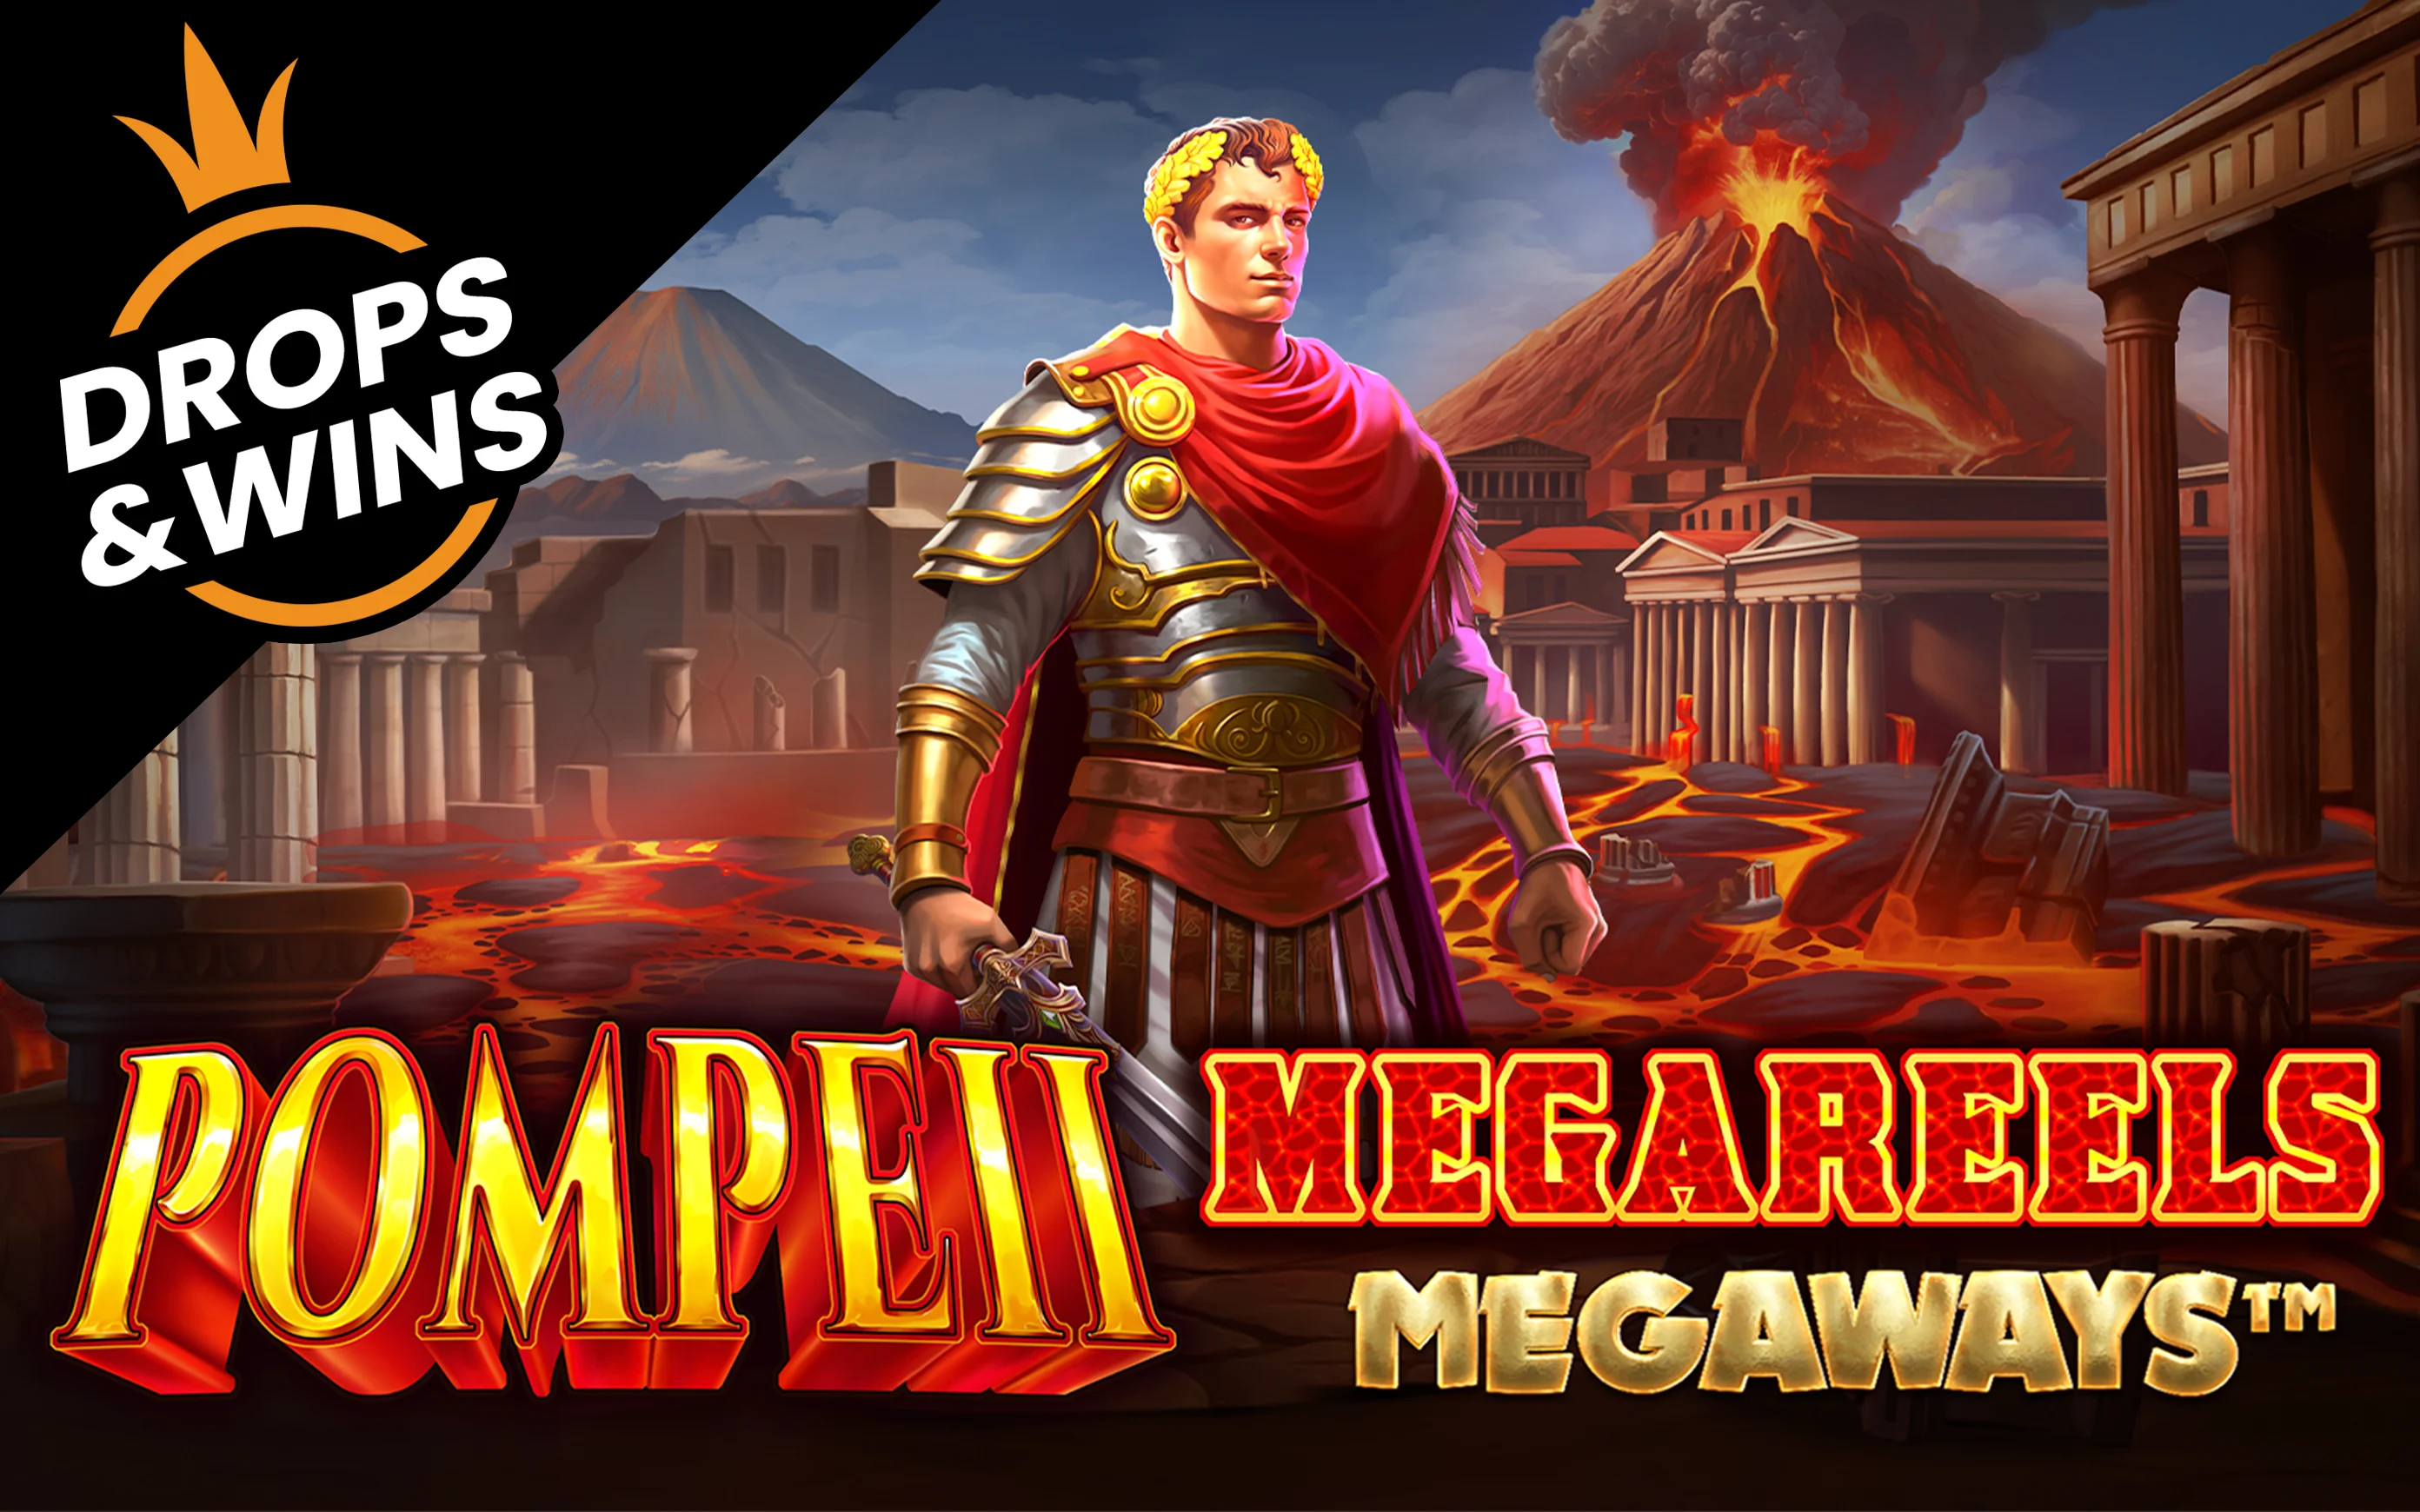 Luaj Pompeii Megareels Megaways™ në kazino Starcasino.be në internet